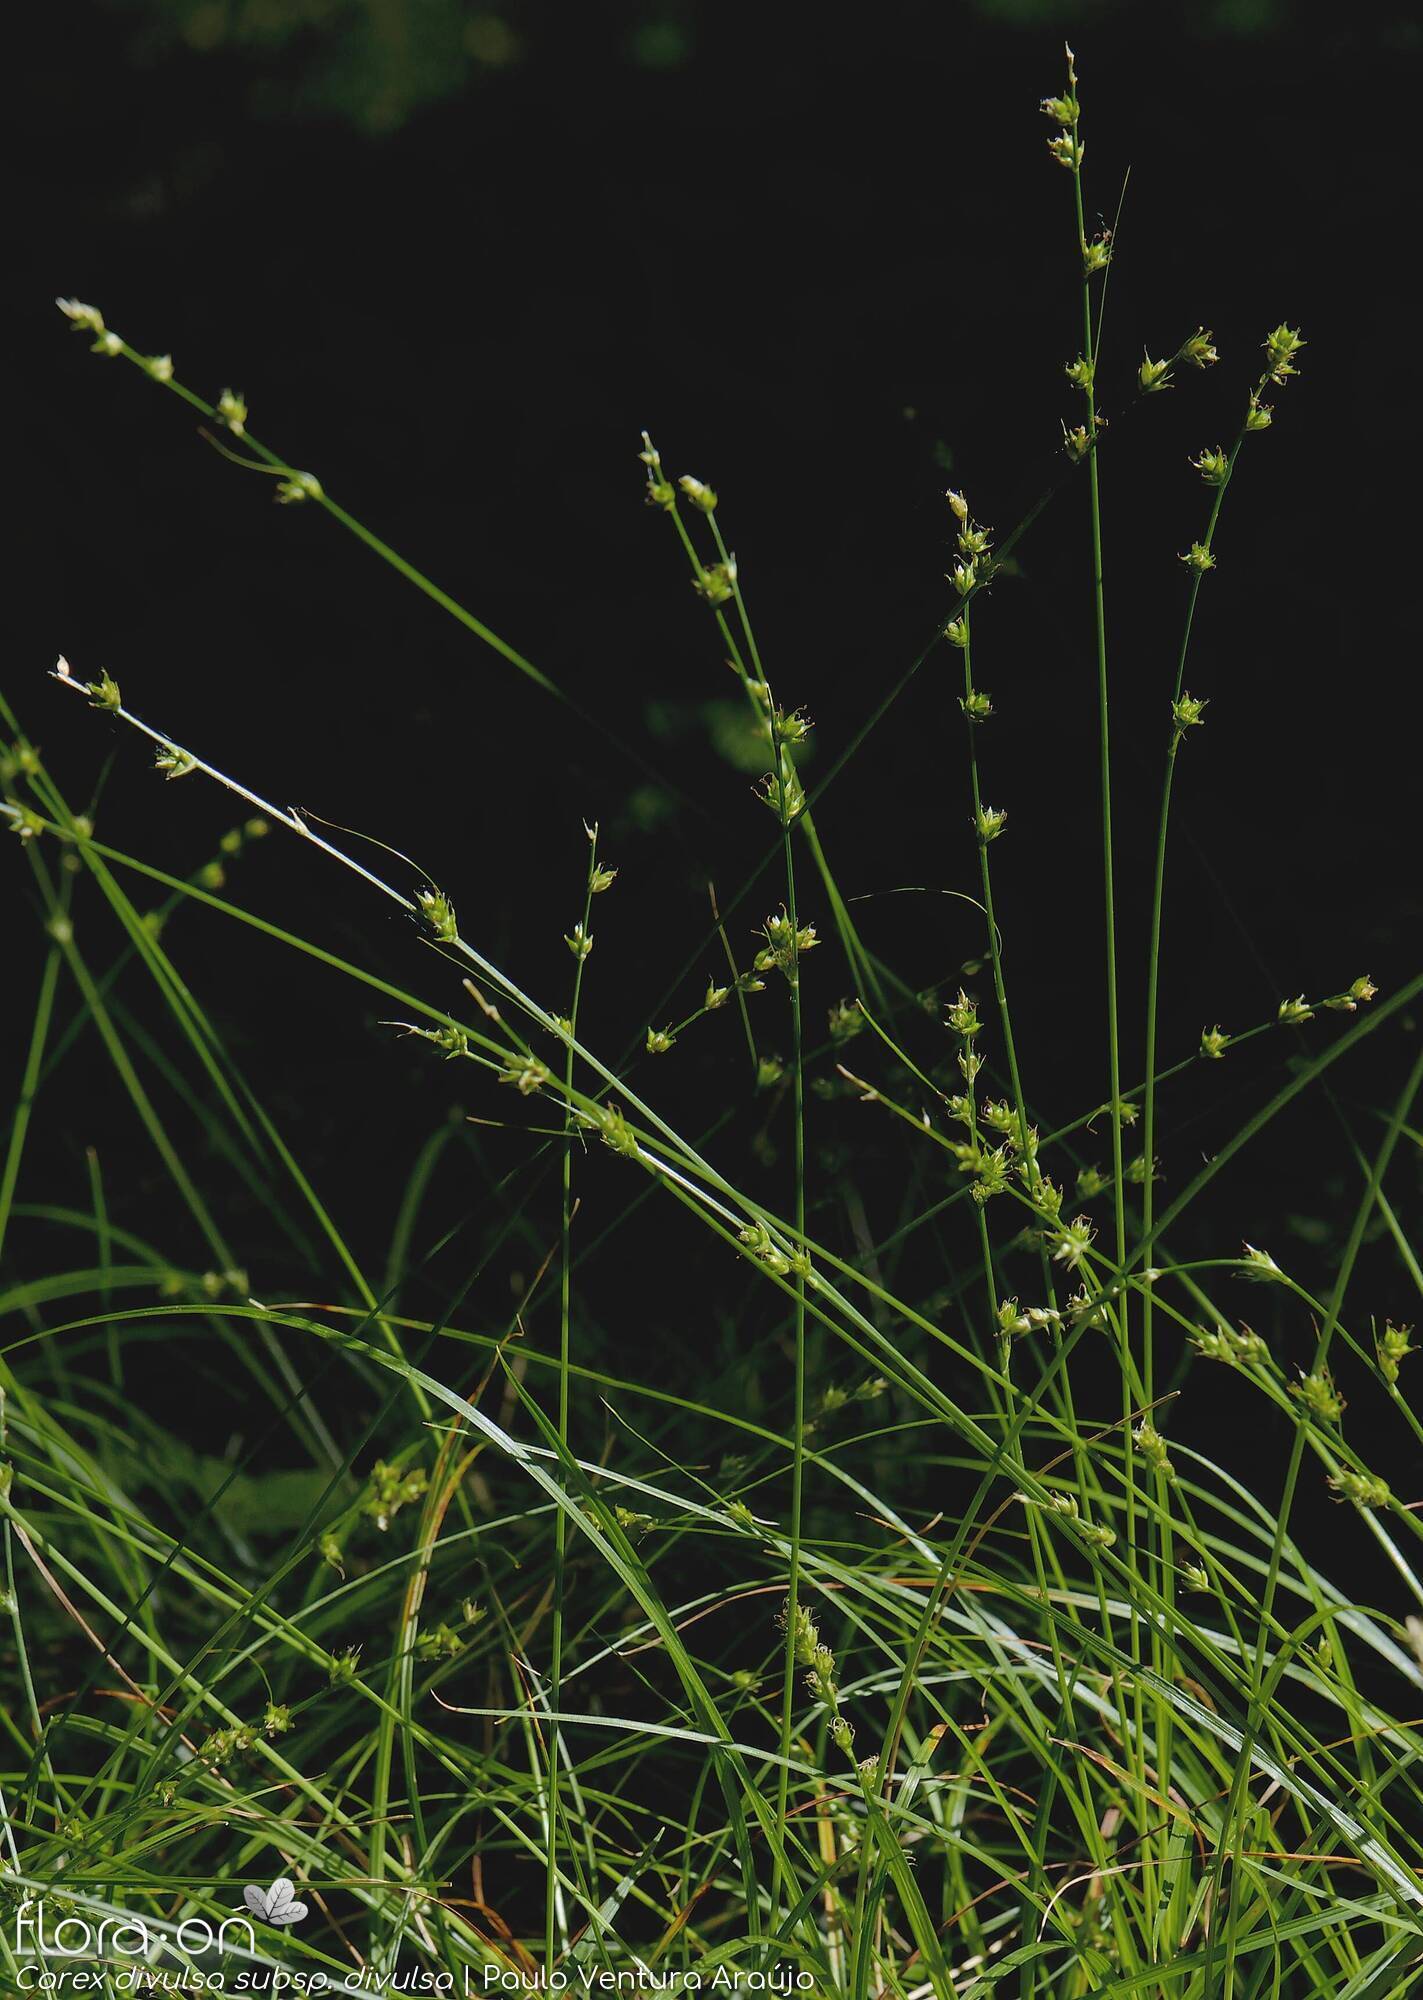 Carex divulsa - Hábito | Paulo Ventura Araújo; CC BY-NC 4.0